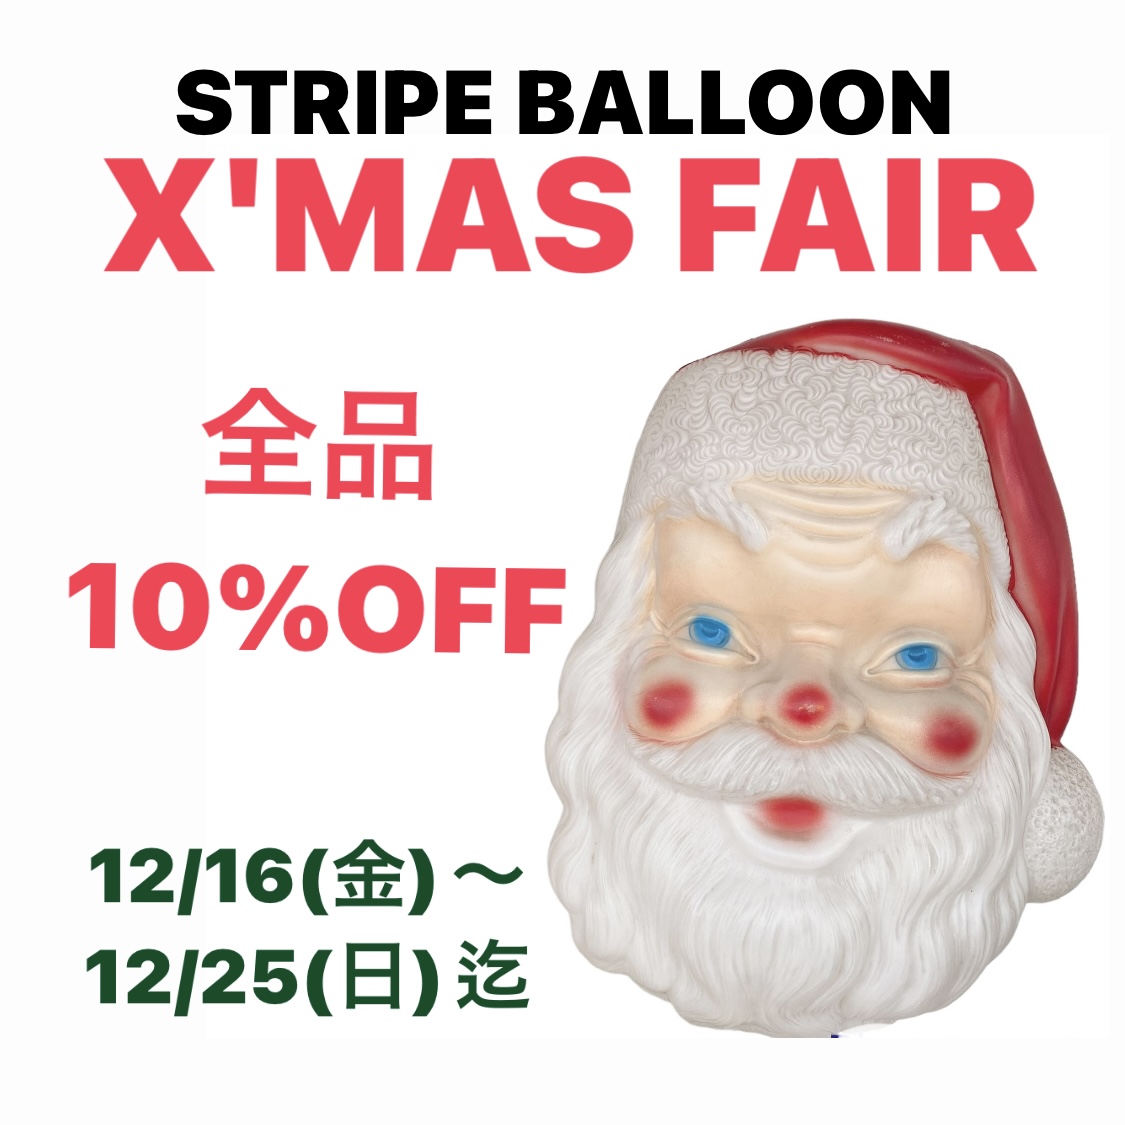 STRIPE BALLOON【X'MAS FAIR】 全品10%OFF!